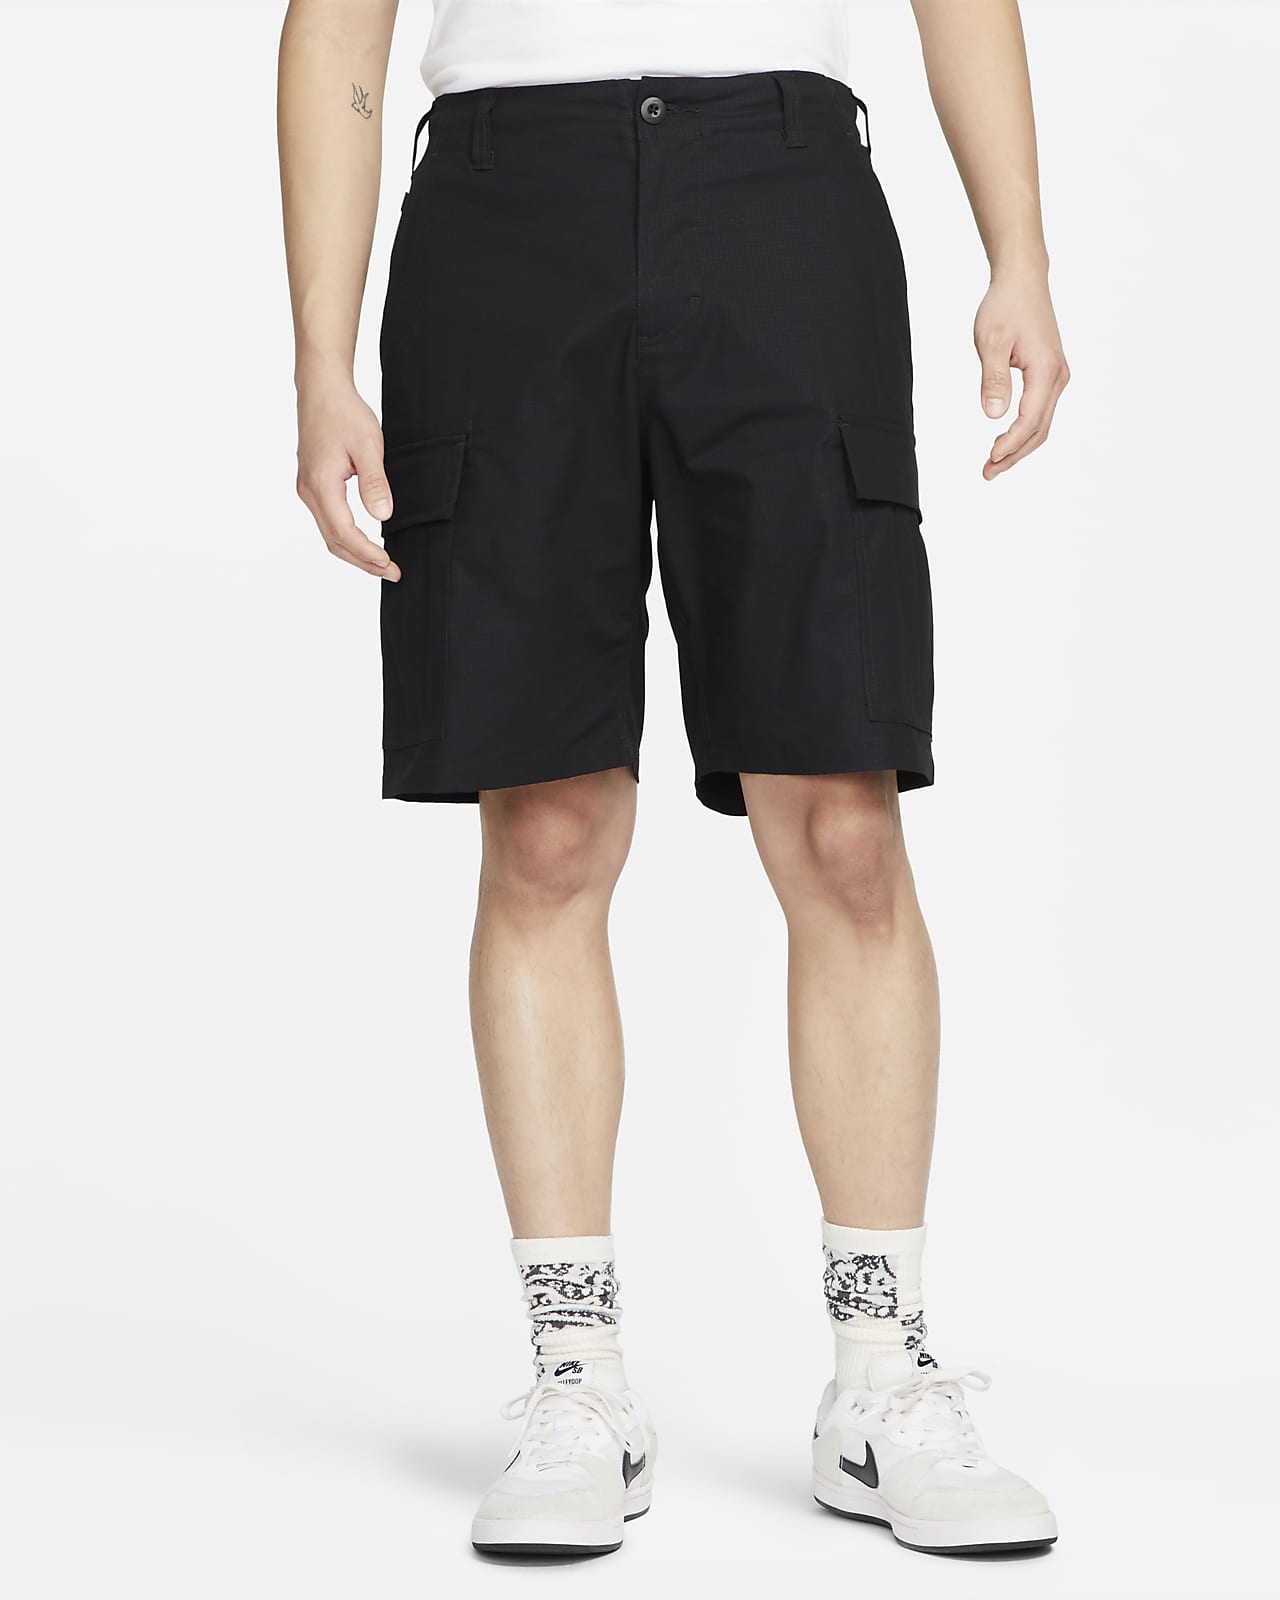 Nike SB Kearny 男款工裝滑板短褲